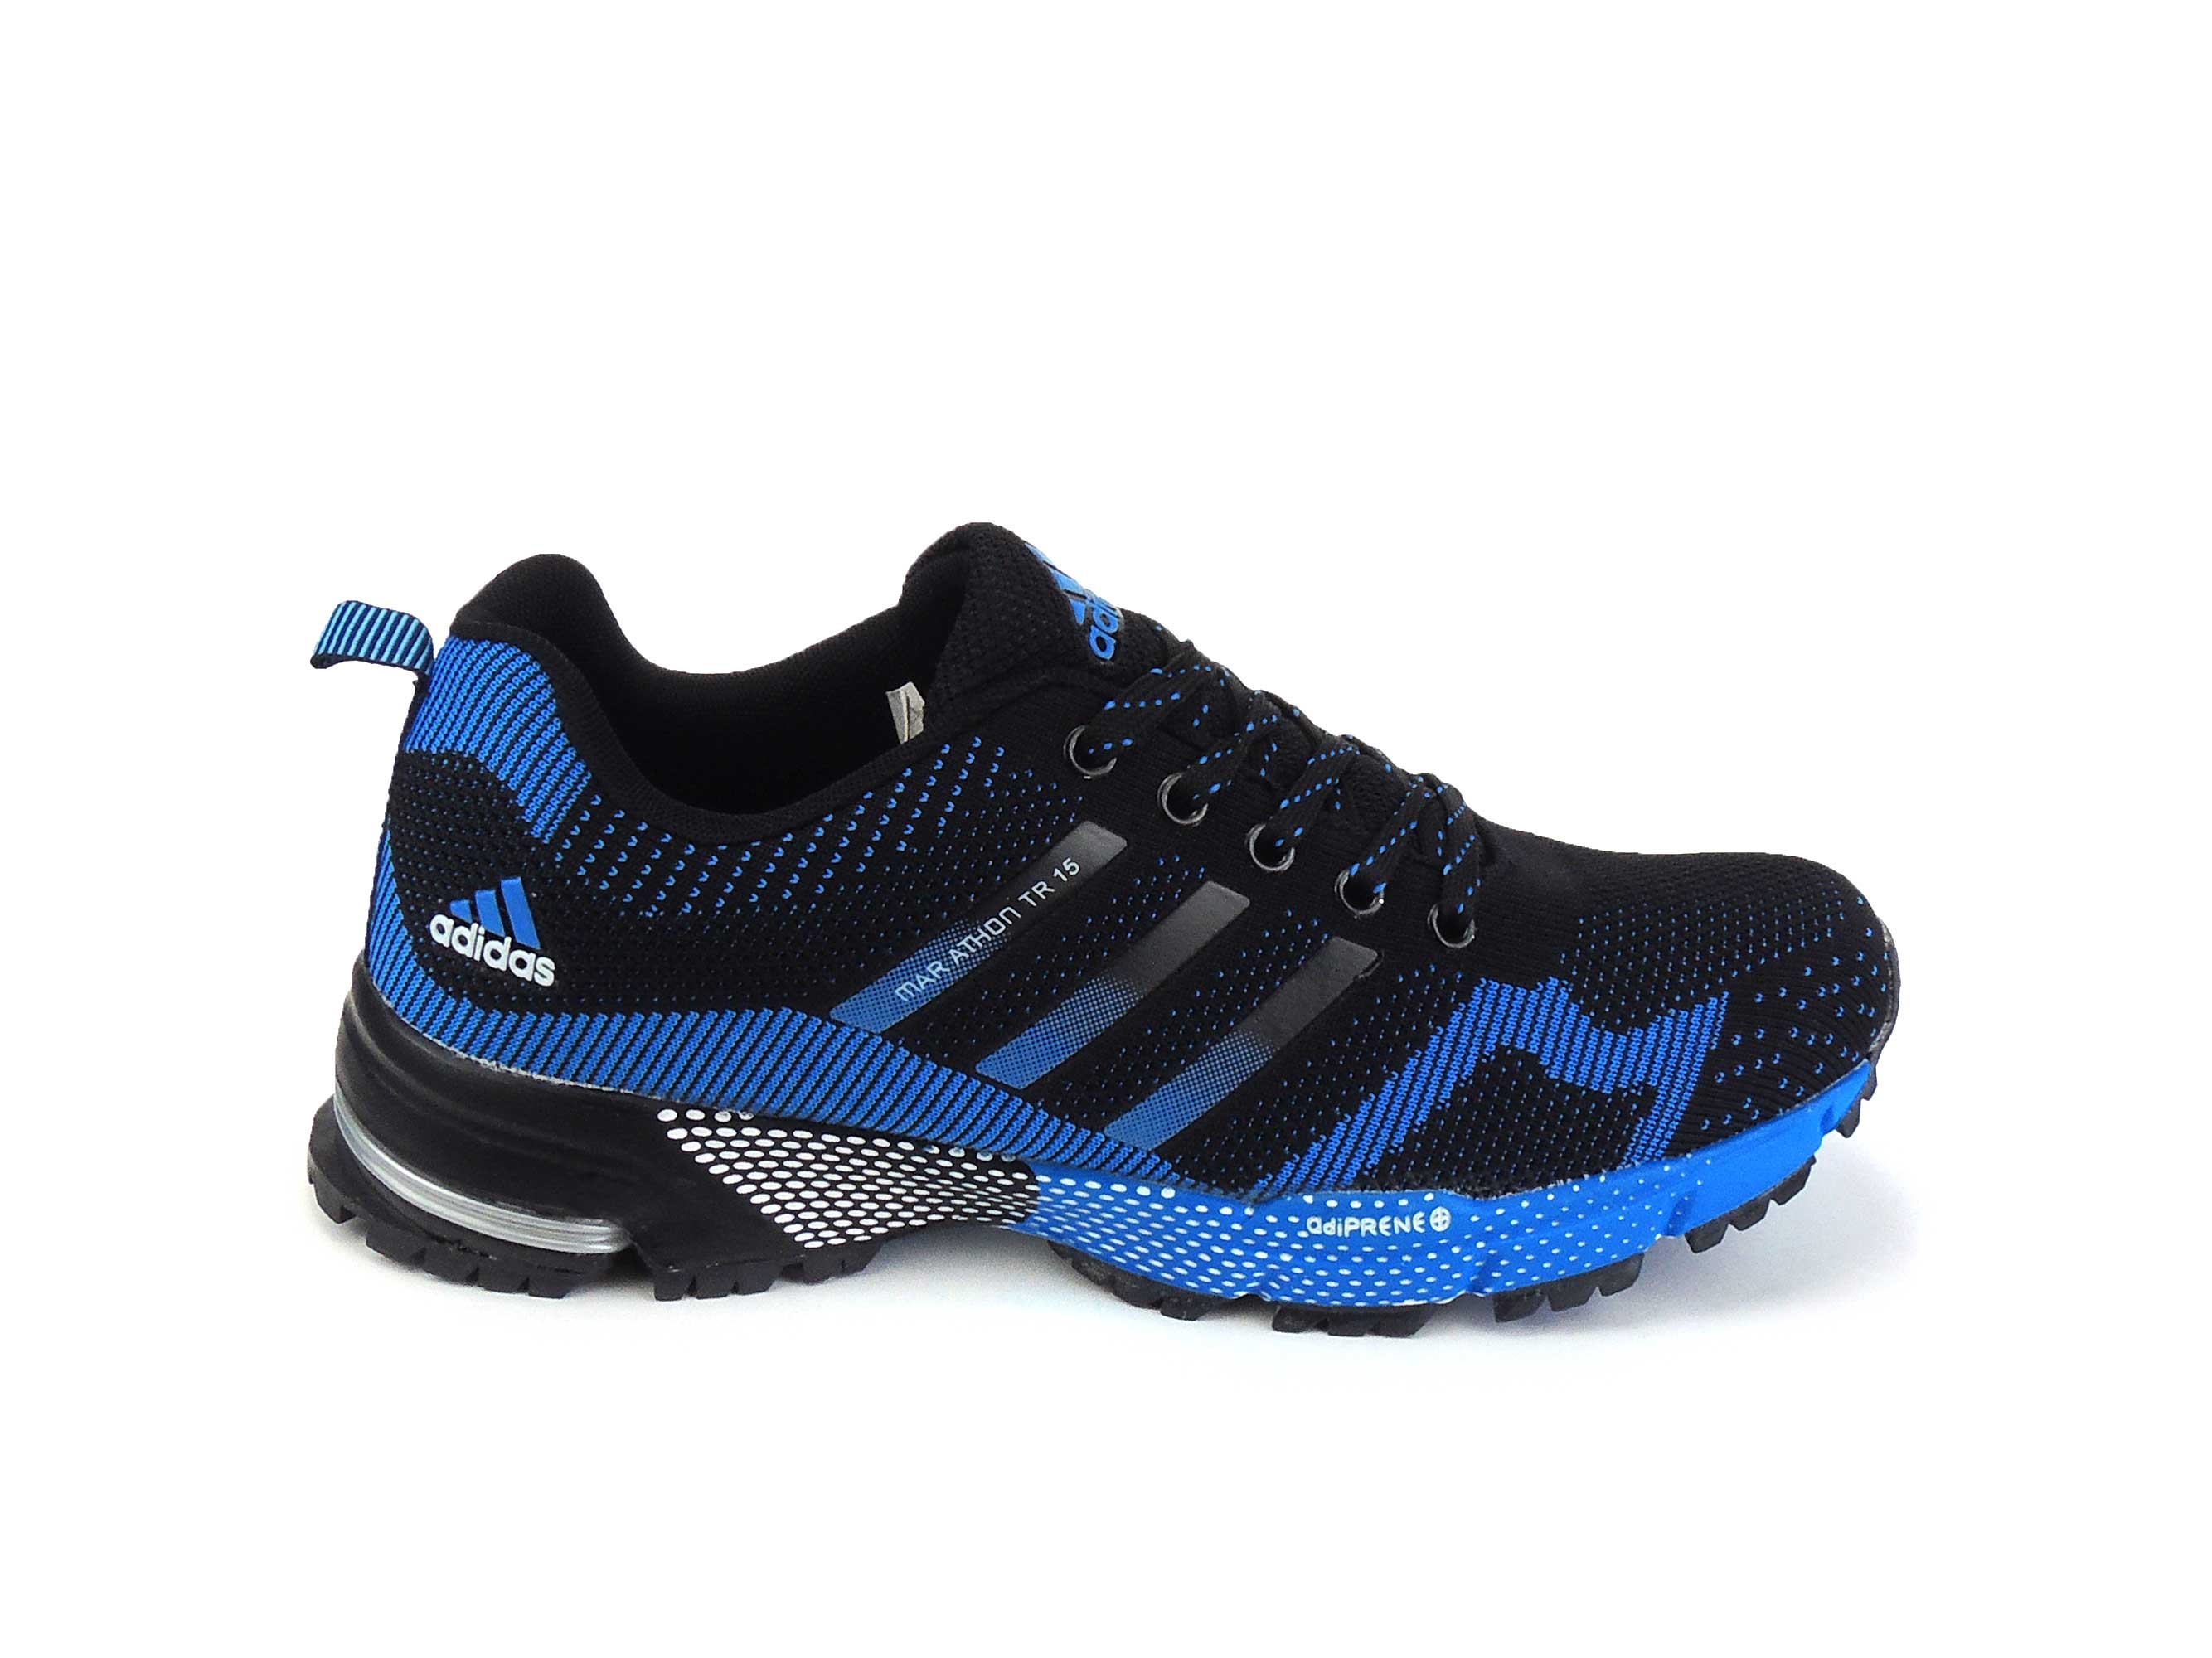 Недорогие кроссовки мужские интернет магазин. Adidas Marathon Flyknit Blue/Red. Адидас Marathon Flyknit. Adidas Marathon tr 15 Blue. Кроссовки мужские adidas letniy.